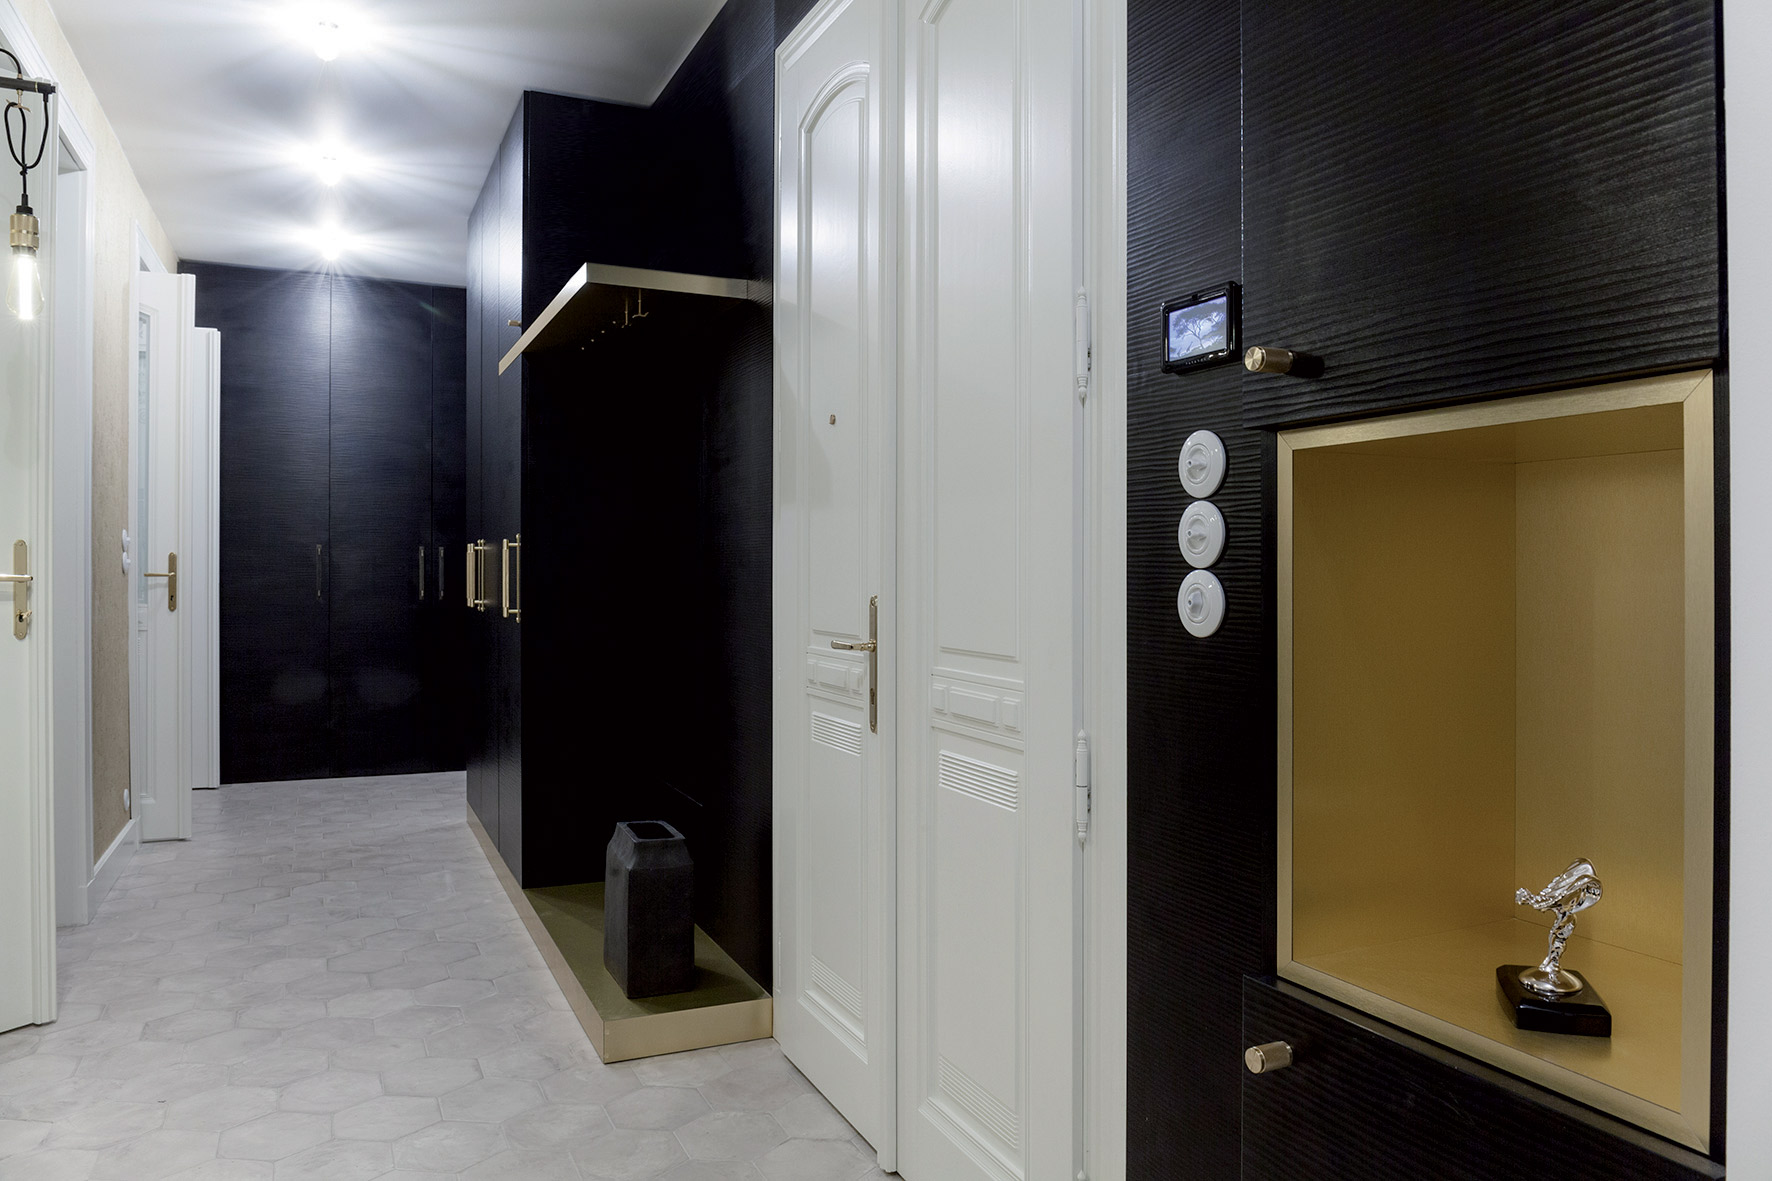 Zlaté prvky odkazují na prestižní adresu i životní styl uživatelů bytu.